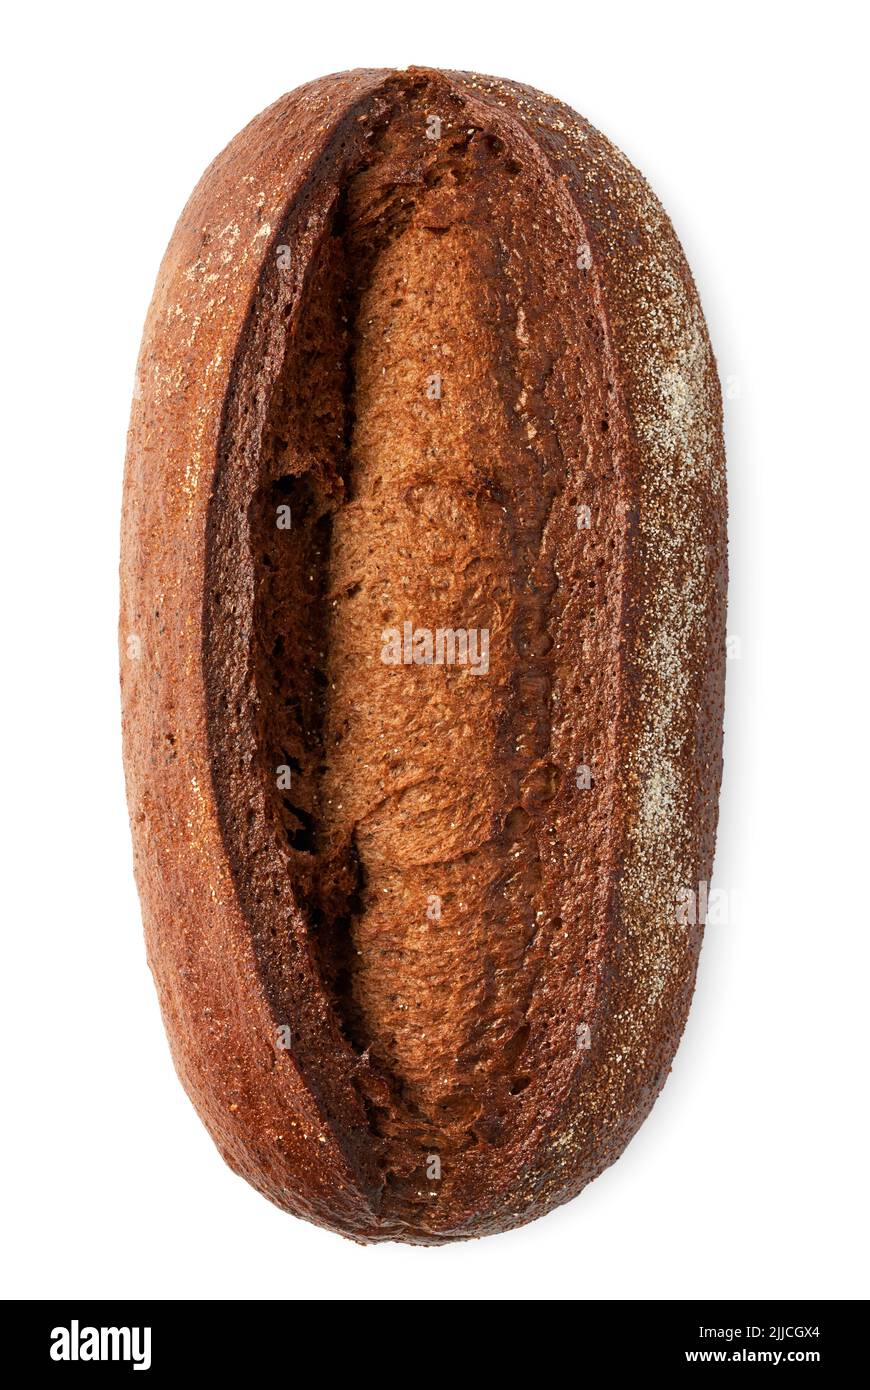 Tradizionale pane di segale scuro fatto in casa, isolato su sfondo bianco Foto Stock